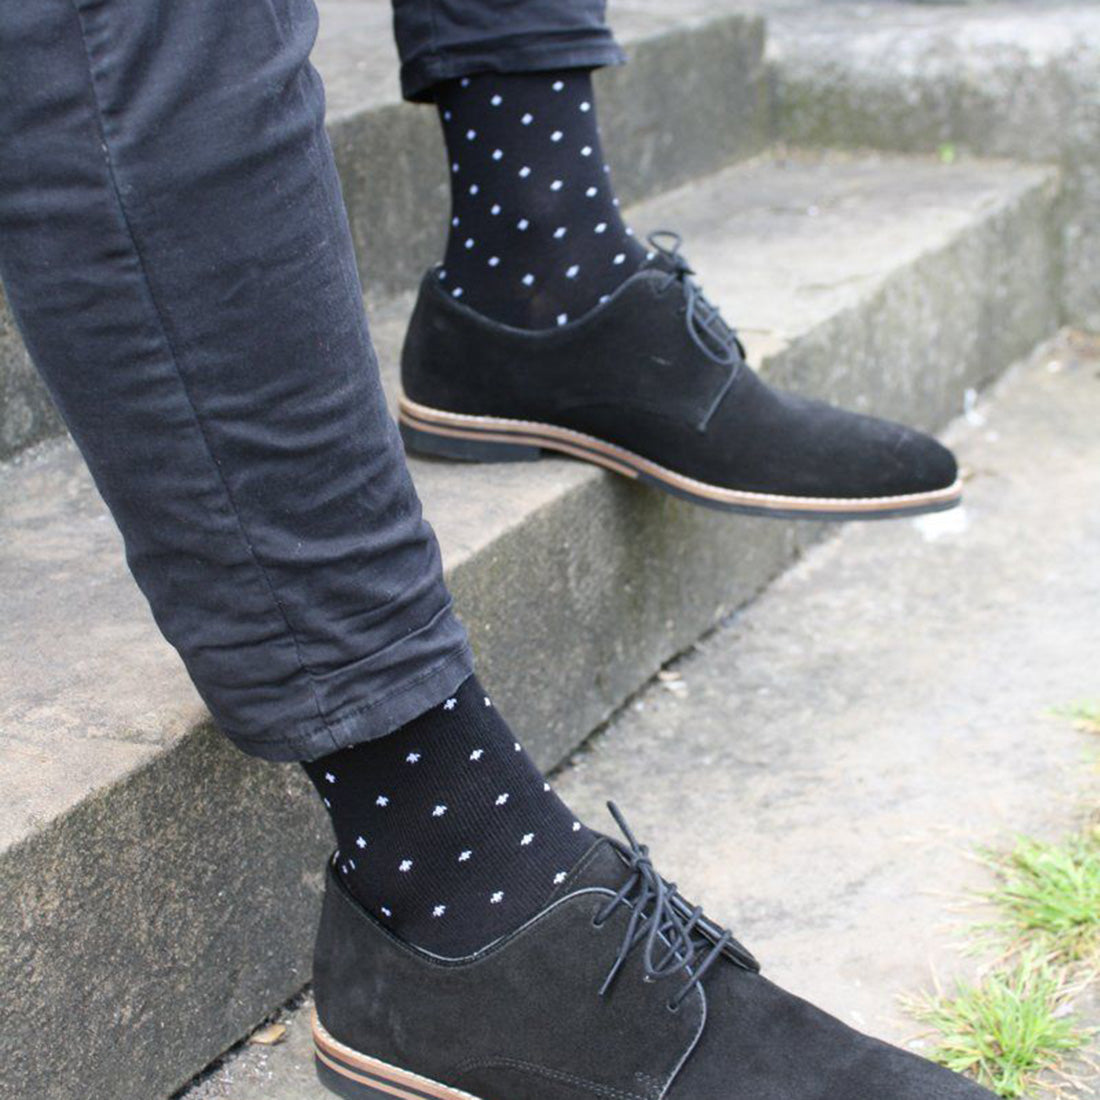 socks-spotted-black-bamboo-socks-2.jpg